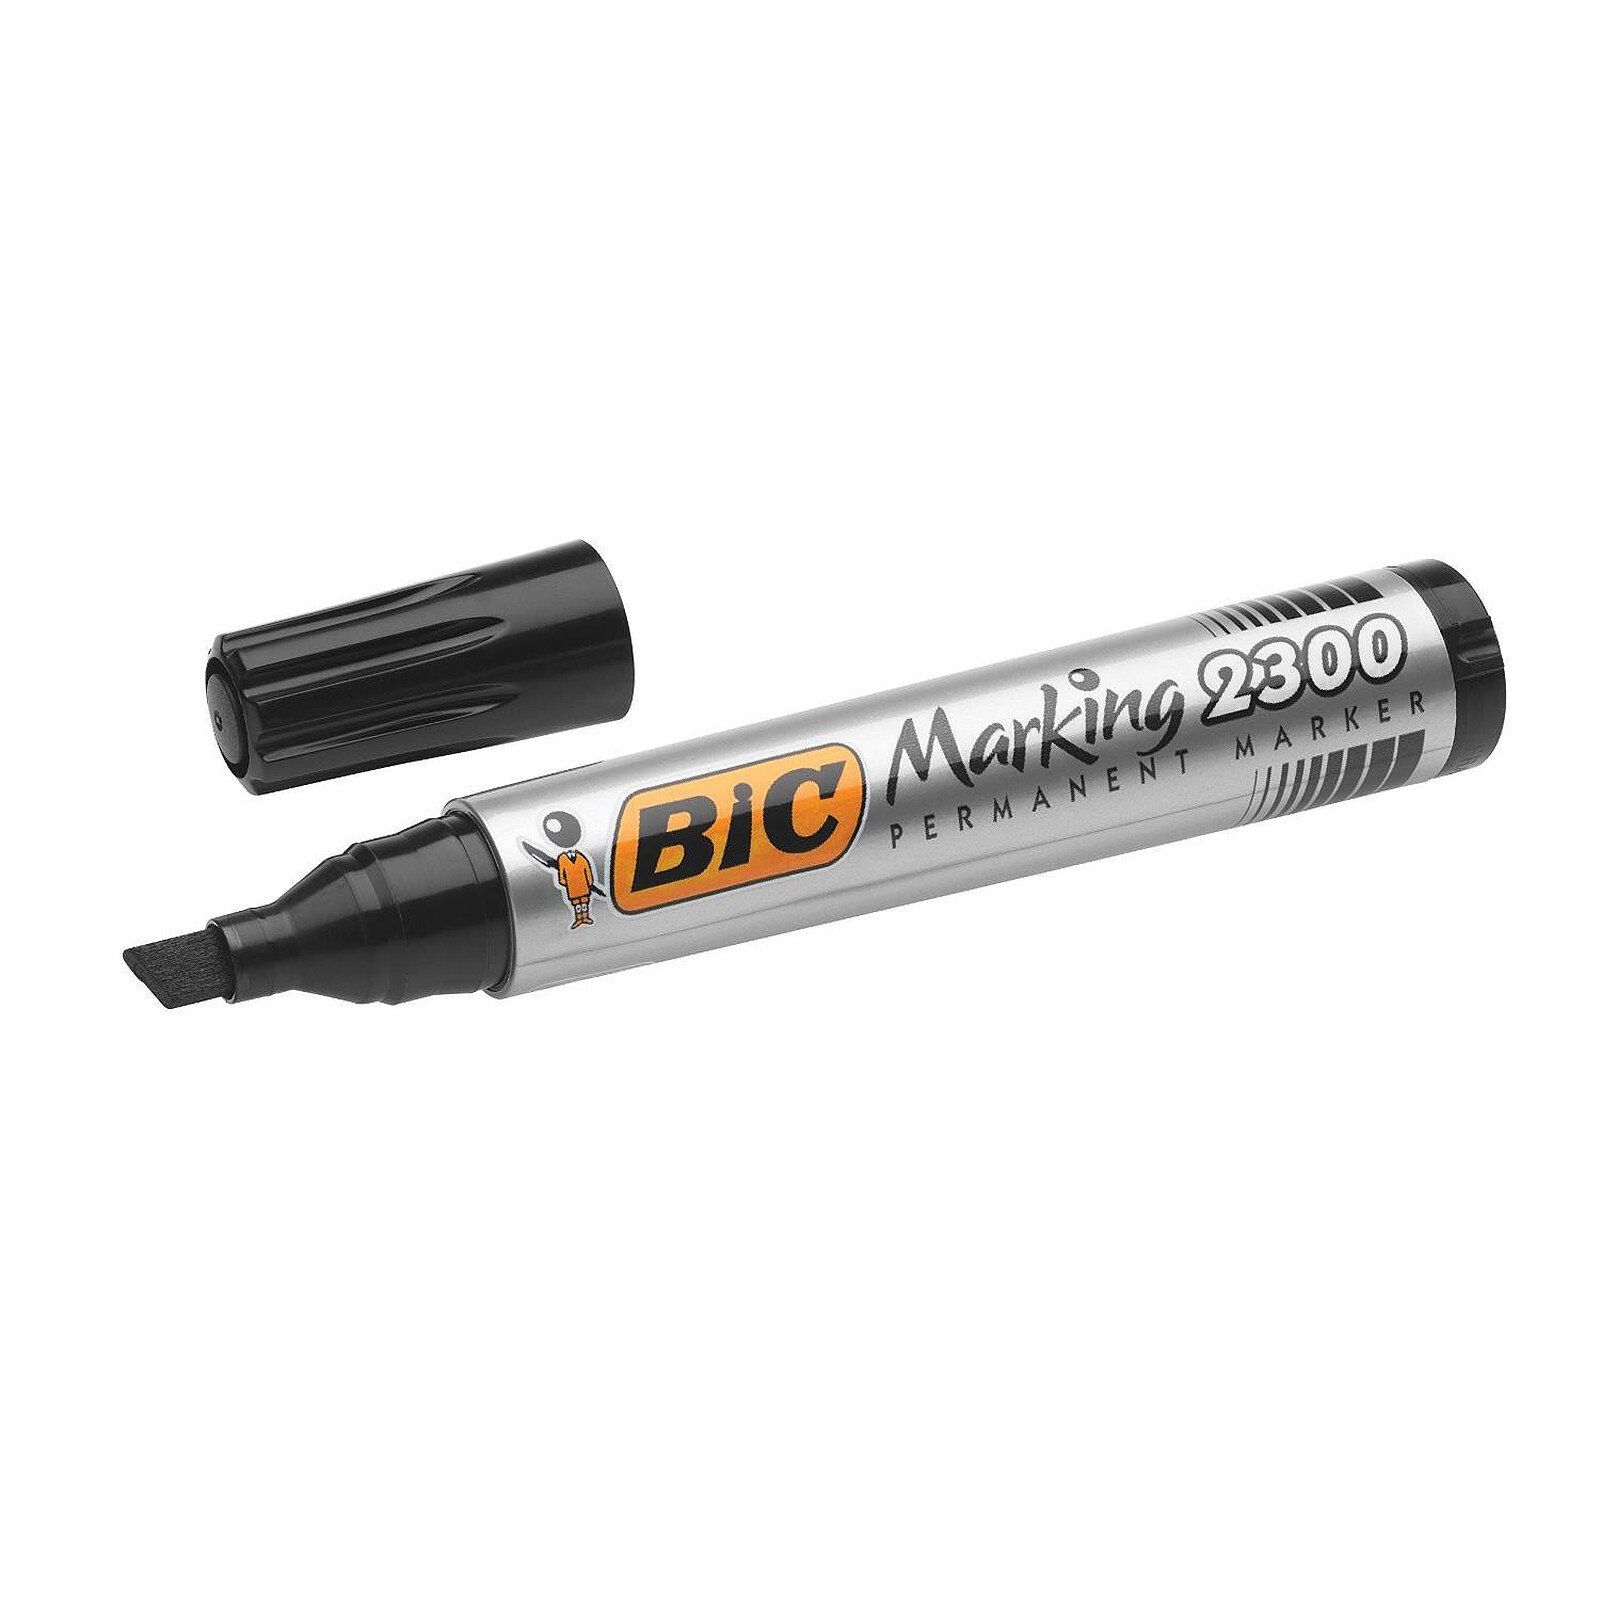 Artline 100 marqueur permanent (7,5 - 12 mm biseautée) - noir